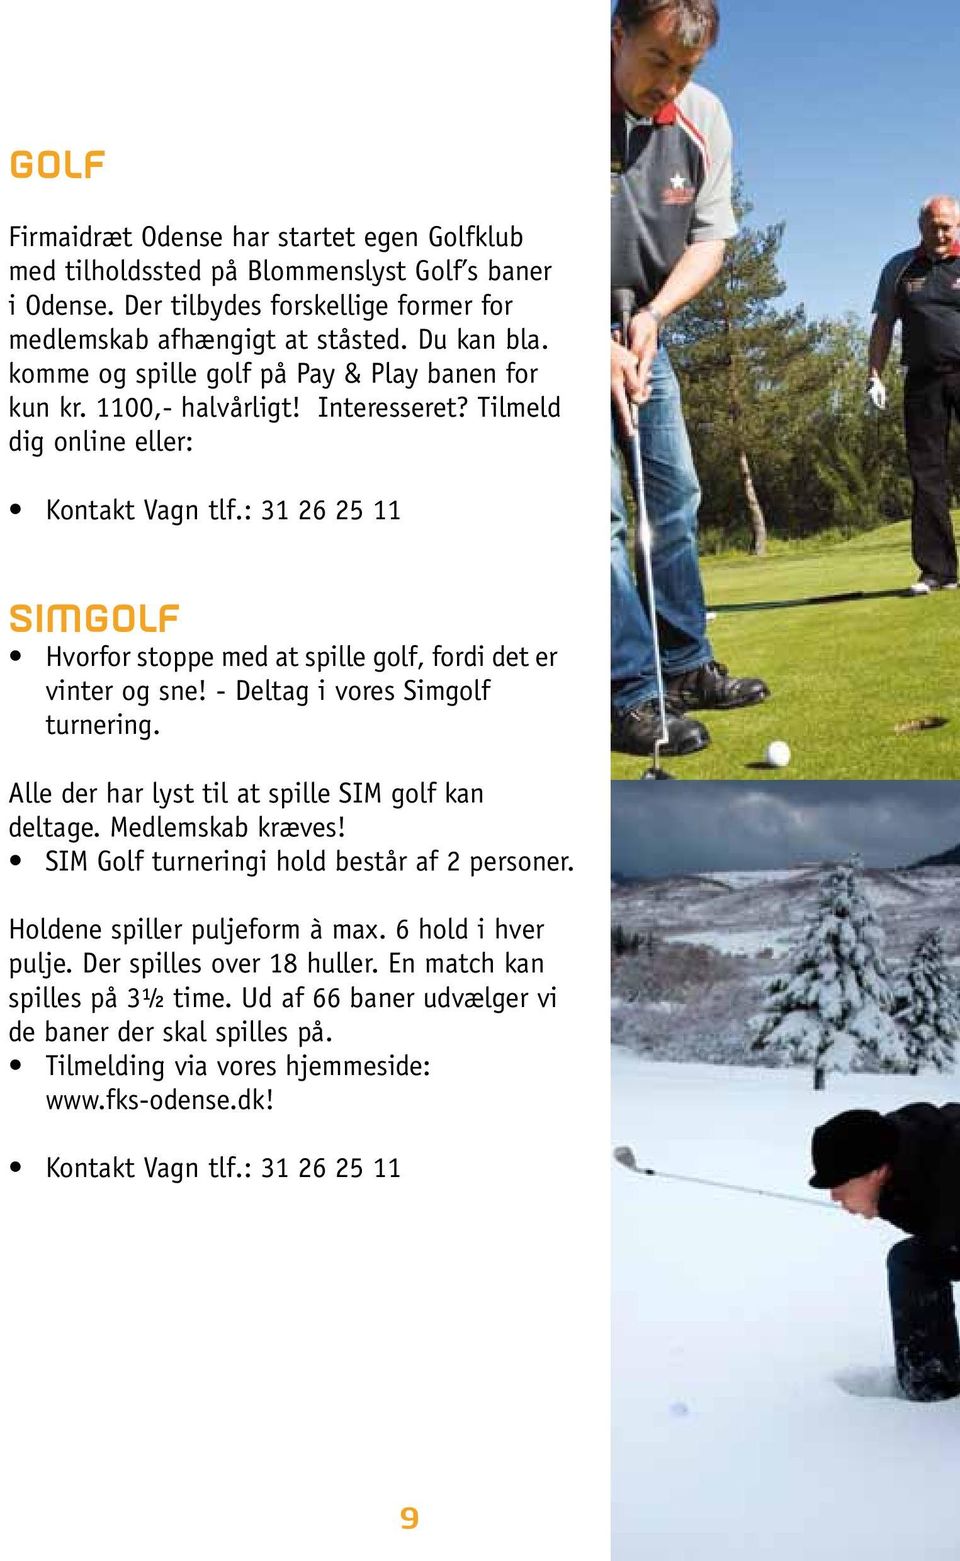 : 31 26 25 11 SIMGOLF Hvorfor stoppe med at spille golf, fordi det er vinter og sne! - Deltag i vores Simgolf turnering. Alle der har lyst til at spille SIM golf kan deltage. Medlemskab kræves!